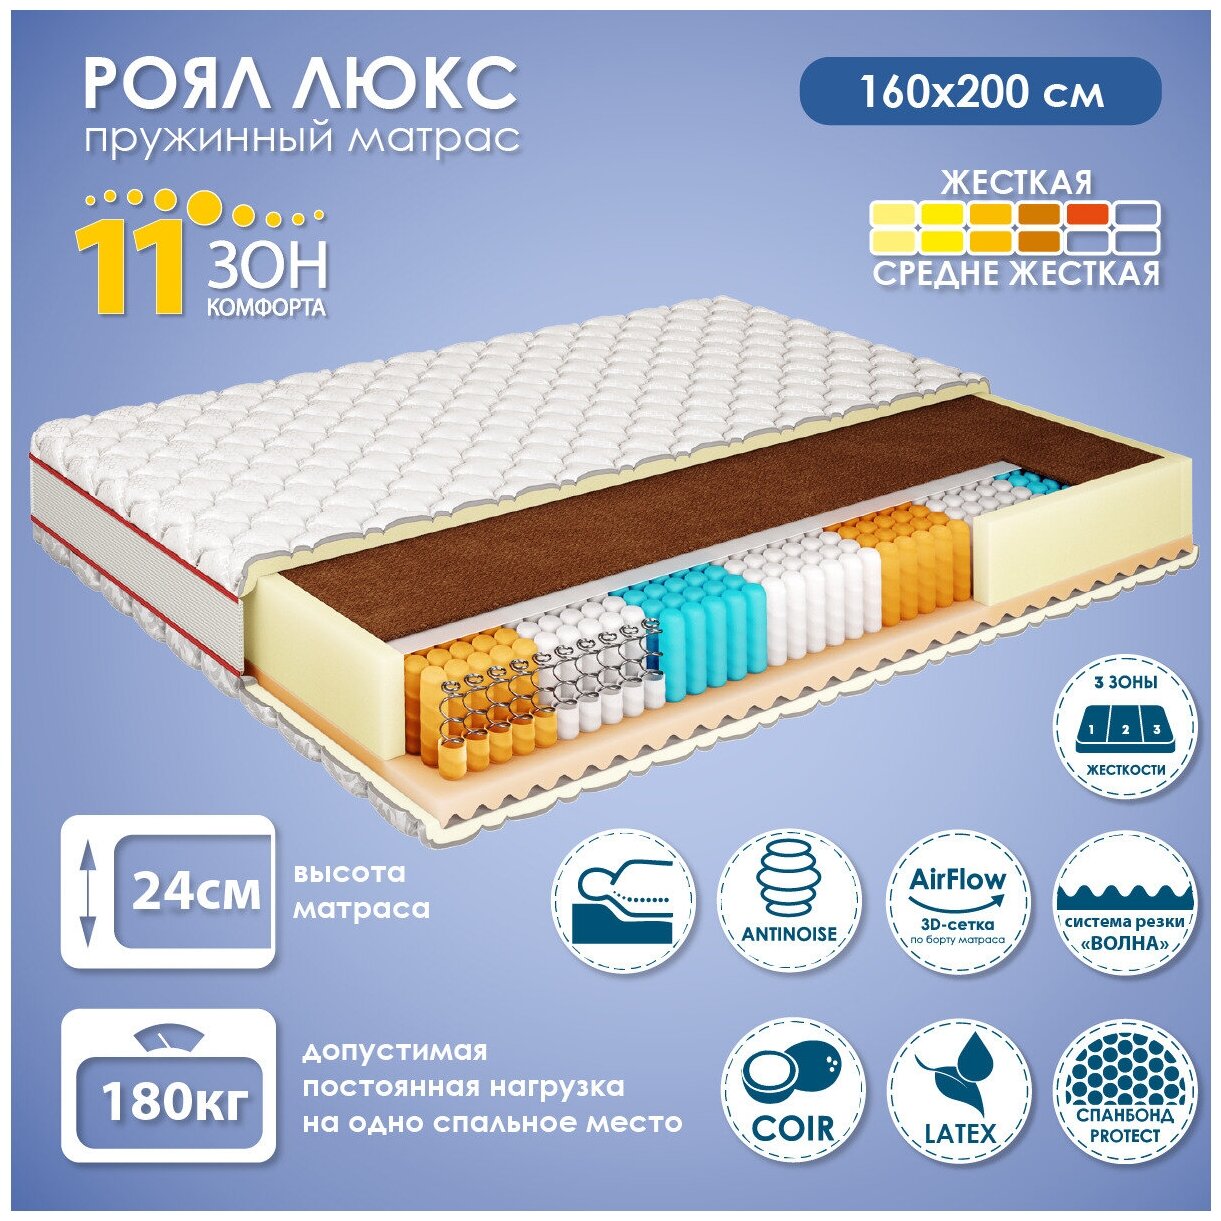 Матрас для кровати 160х200 см Роял Люкс, независимый пружинный блок, 11 зон комфорта, 24 см высота, съемный чехол, Ами Мебель, Беларусь